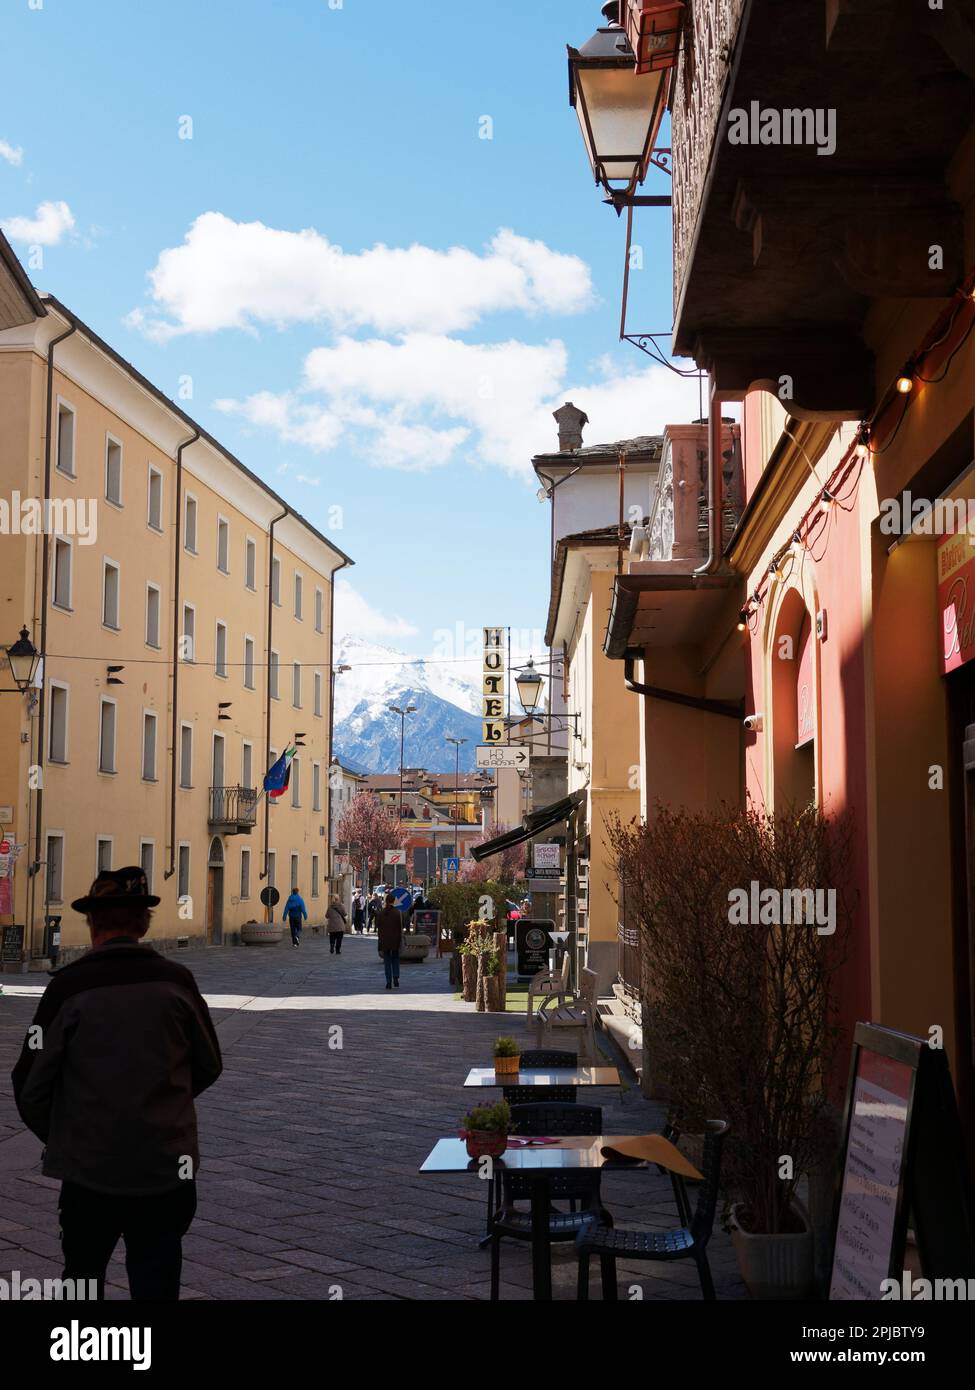 Straße in Aosta mit einem Mann mit einem Hut in Silhouette und Café/Bar Tische und Stühle im Vordergrund und einem Berg in der Ferne, Aosta Valley, Italien Stockfoto